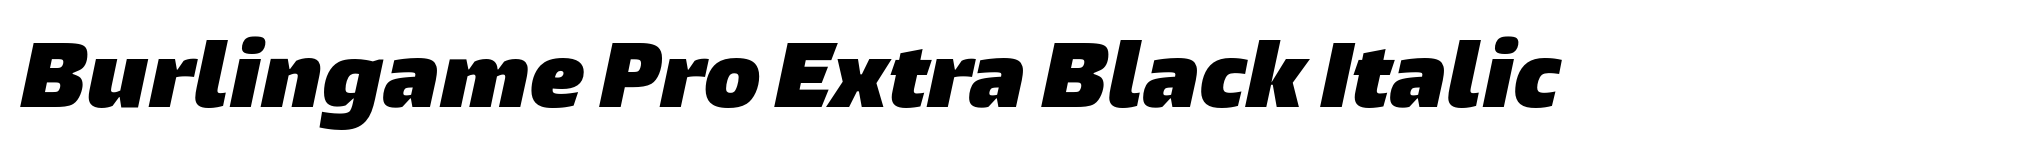 Burlingame Pro Extra Black Italic image